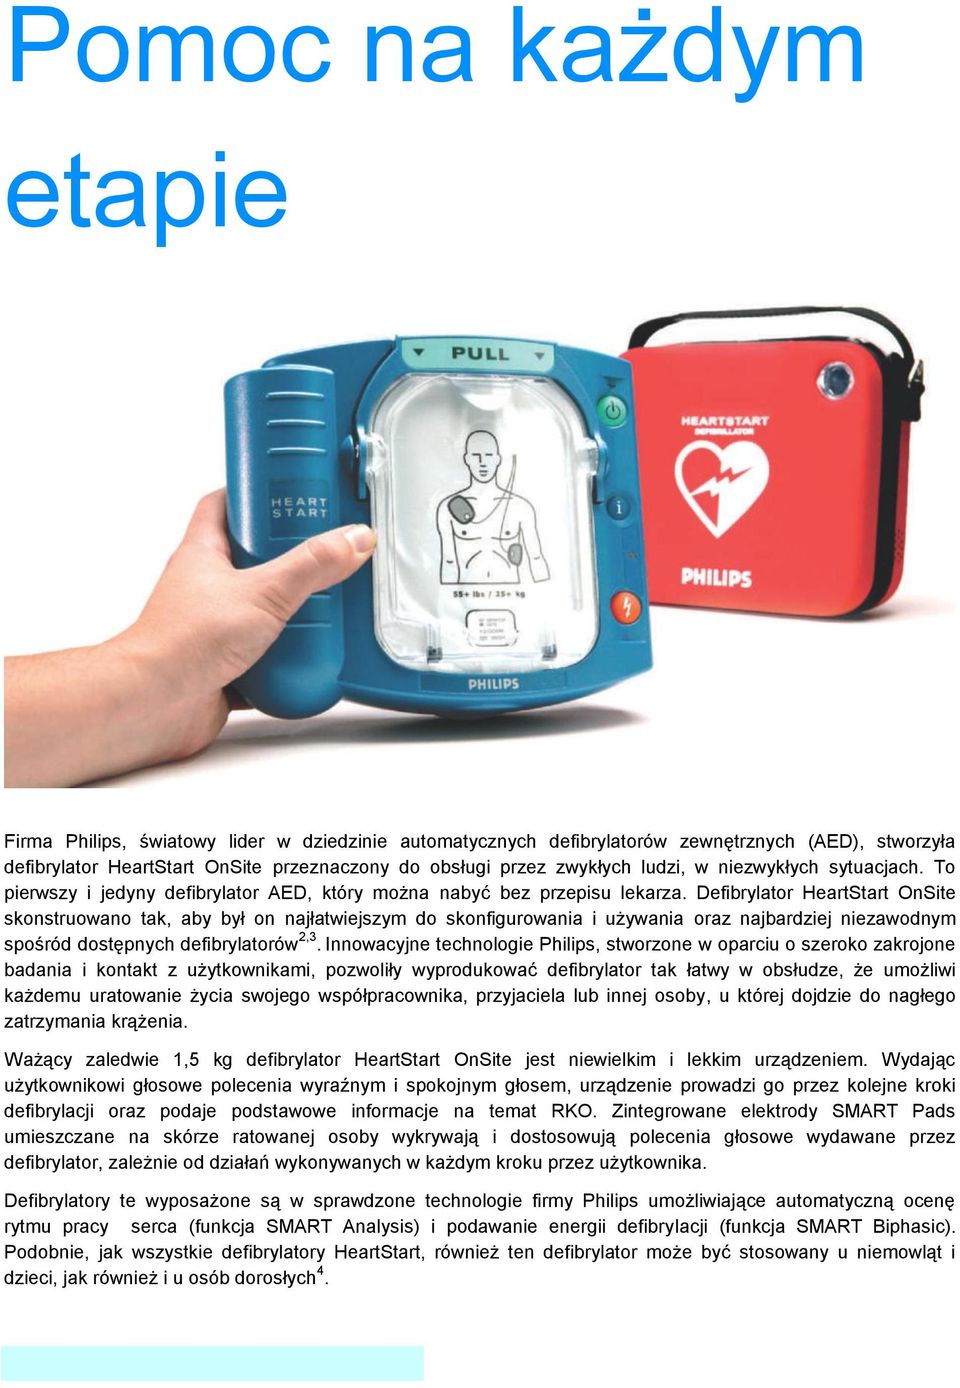 Defibrylator HeartStart OnSite skonstruowano tak, aby był on najłatwiejszym do skonfigurowania i używania oraz najbardziej niezawodnym spośród dostępnych defibrylatorów 2,3.